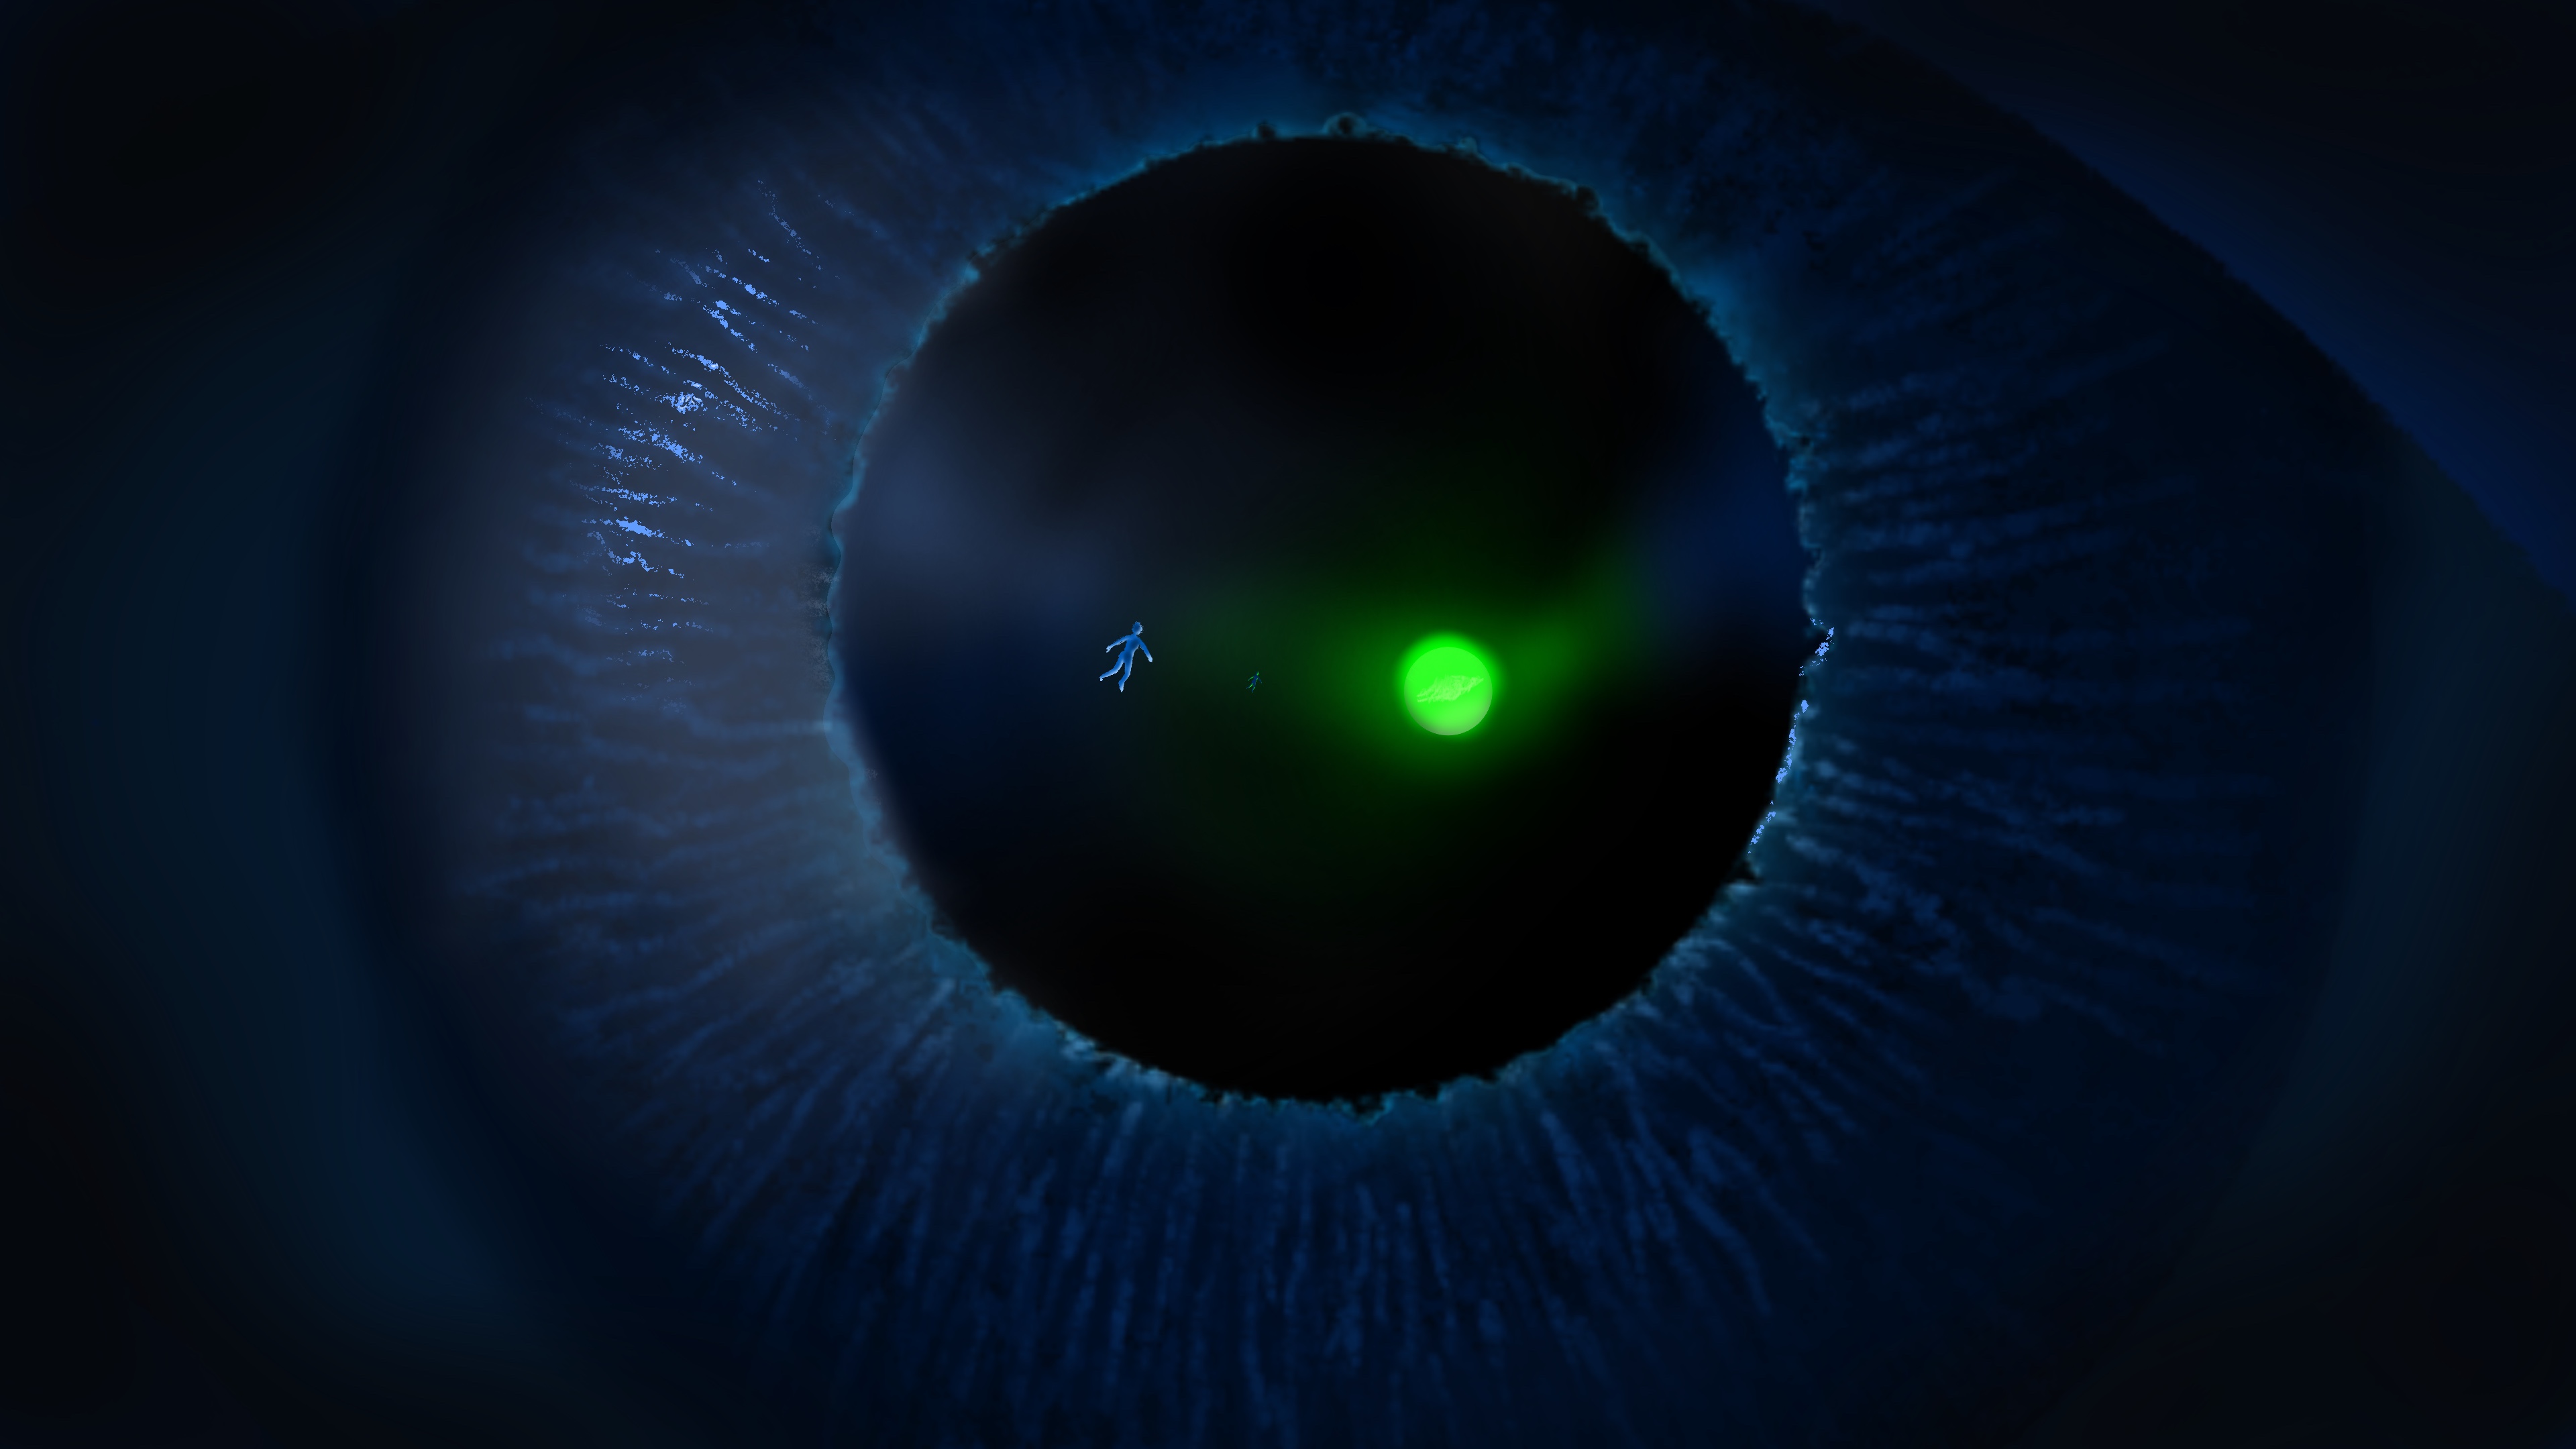 1. The Metaverse Eye